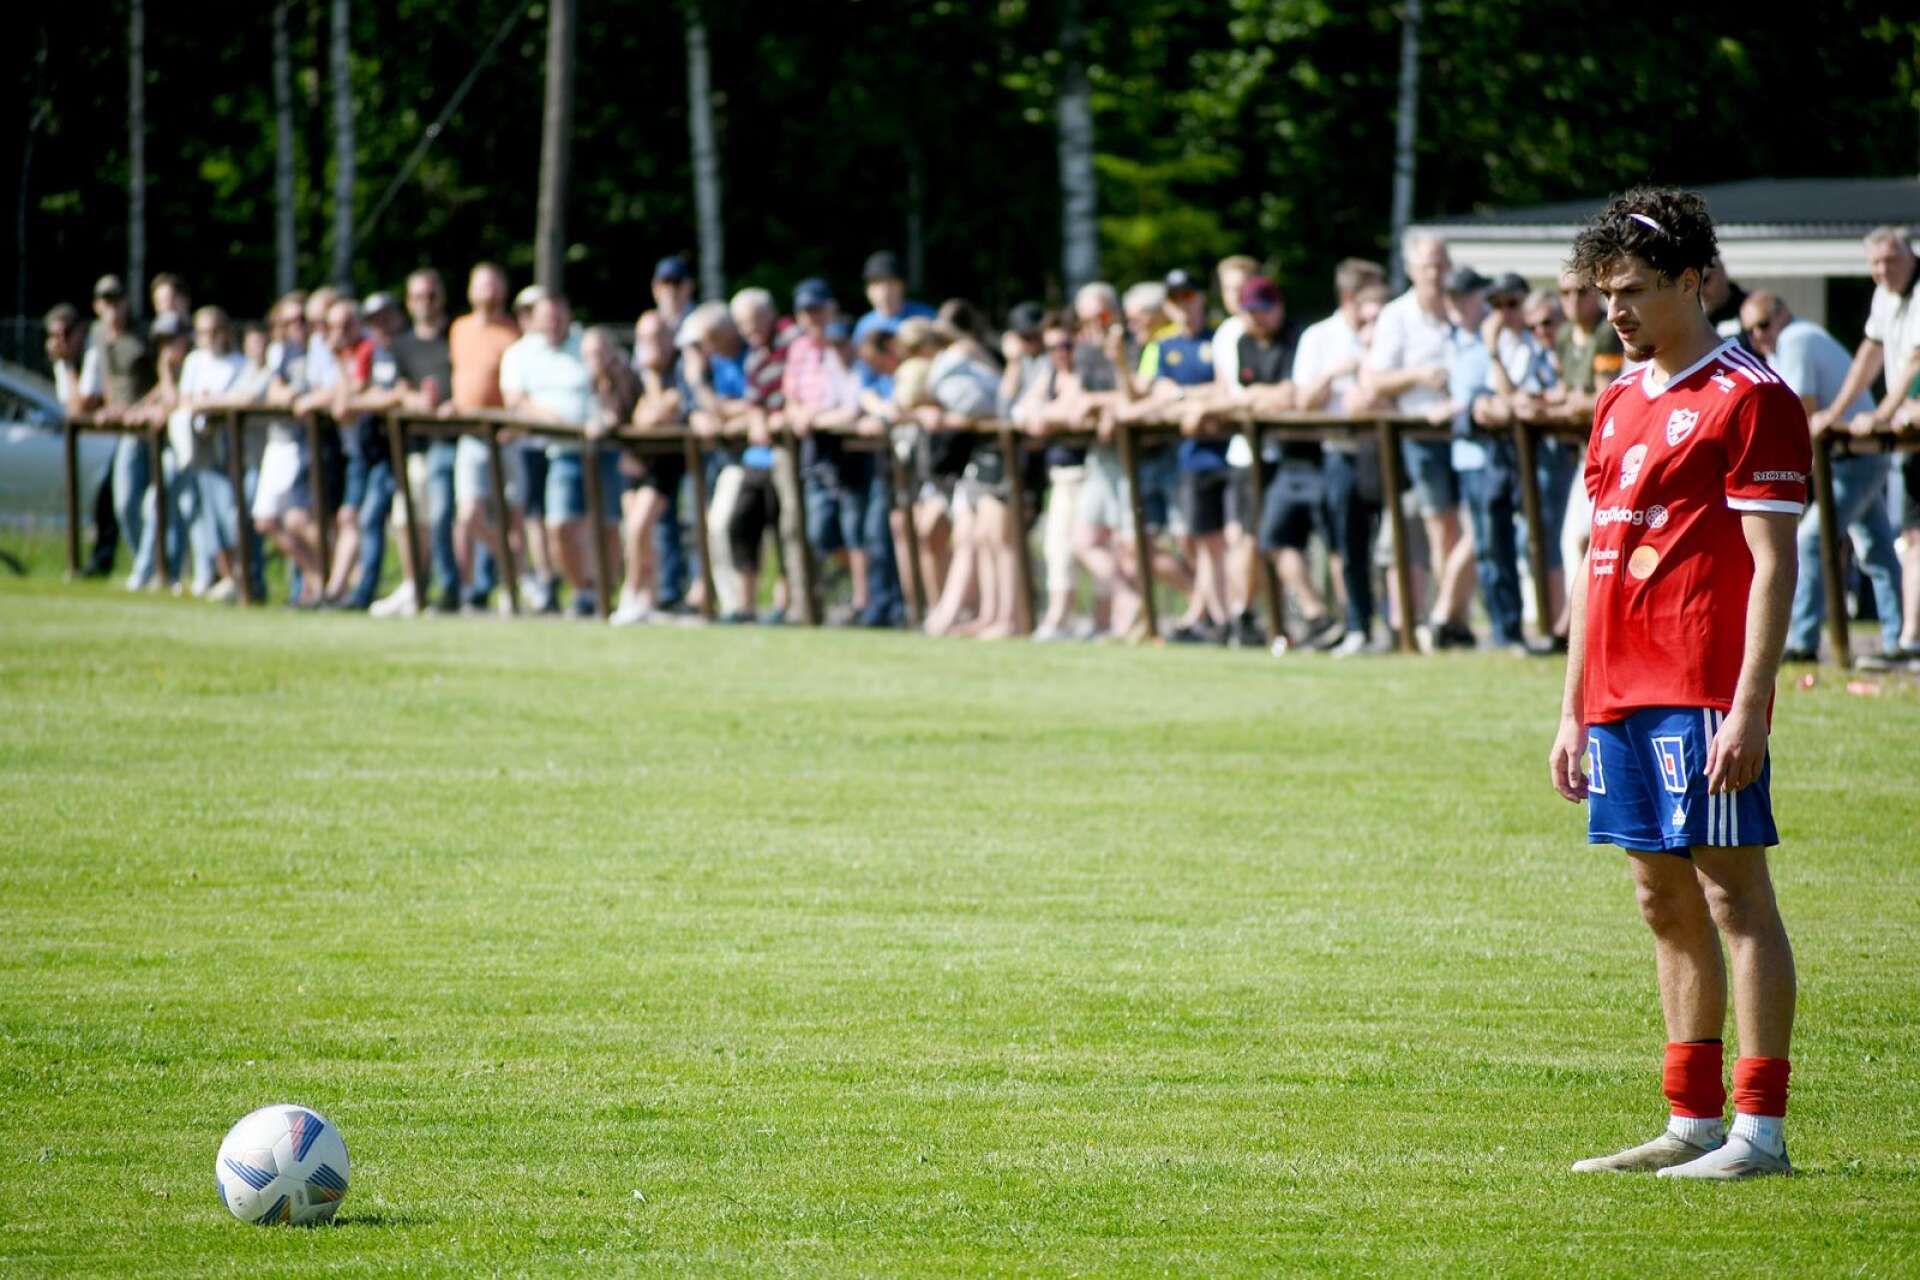 Omar Soukkar inför en frispark i den heta derbymatchen mot Rottneros IK, som drog storpublik.